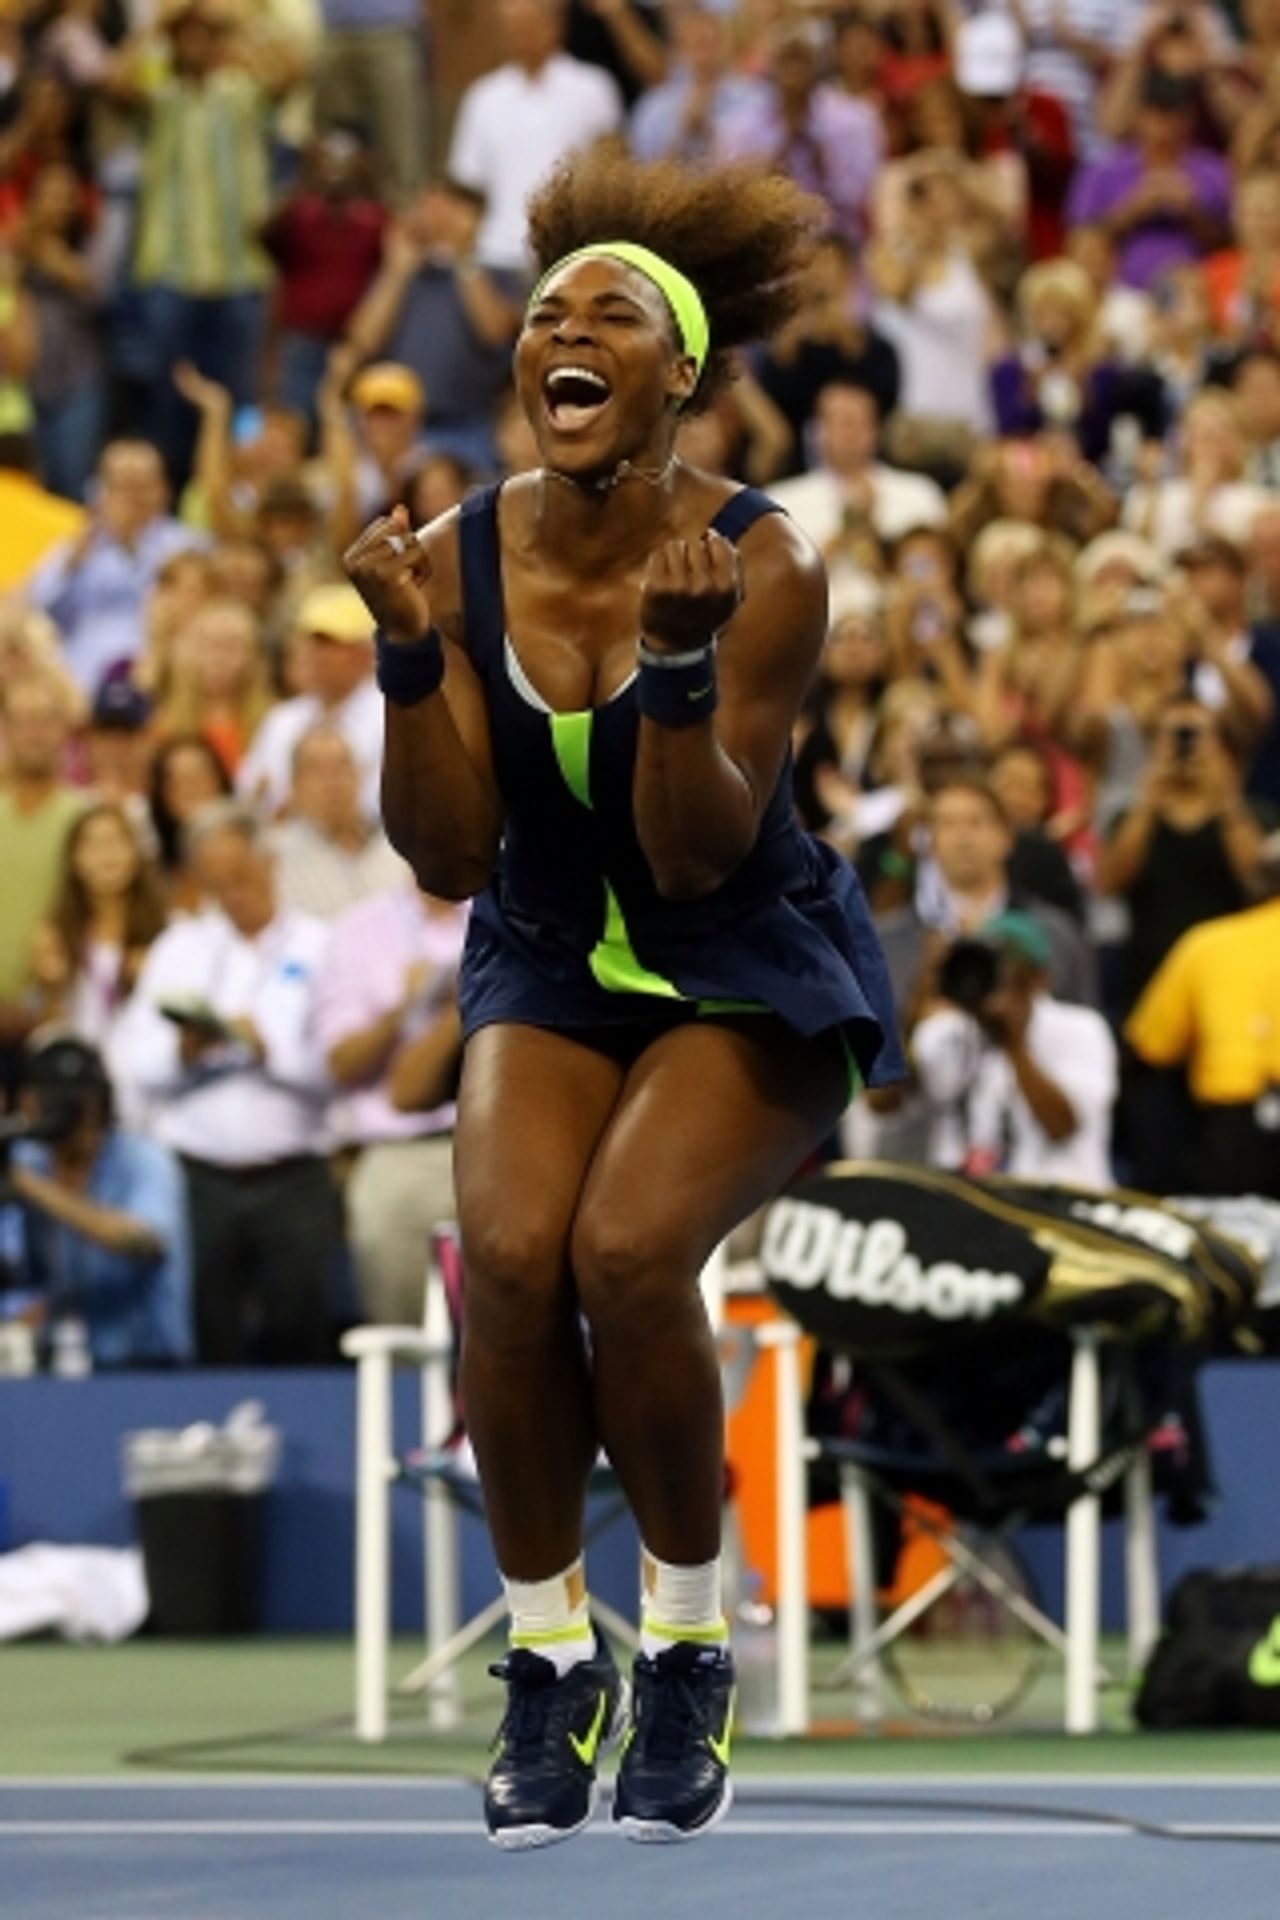 Serena radost - GALERIE: Serena Williams pózuje před mrakodrapy (14/14)